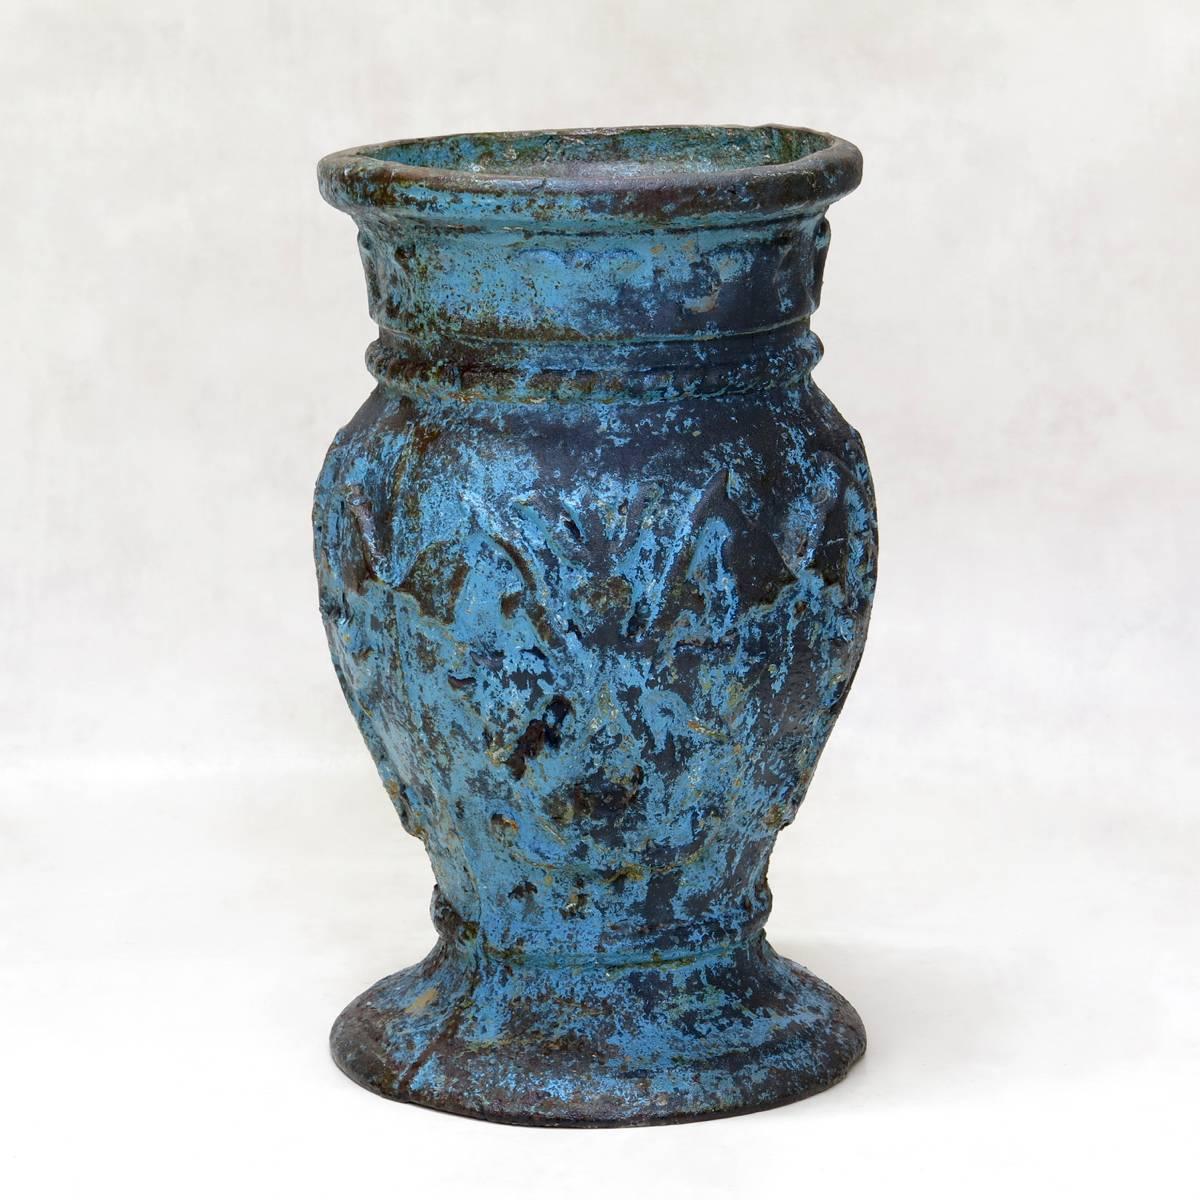 Sehr reizvoller Satz von drei gusseisernen Vasen, jede mit unterschiedlicher Originallackierung - eine blau, eine goldglänzend und eine grün-weiß. Die Farbe ist an einigen Stellen abgetragen, so dass das Eisen sichtbar wird. Hübsches